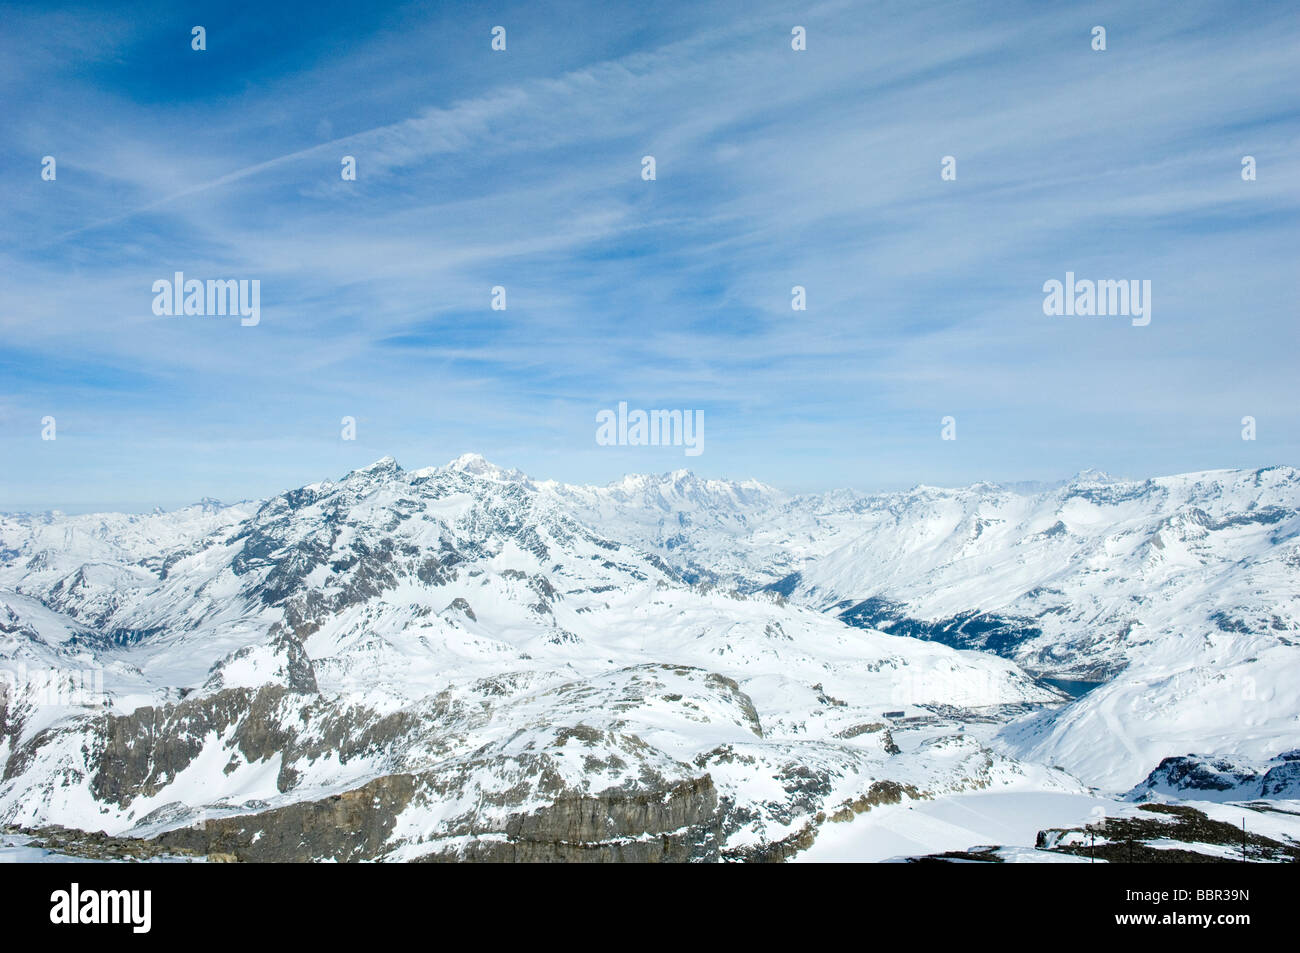 Französische Alpen Winter Ski Resort Stockfoto